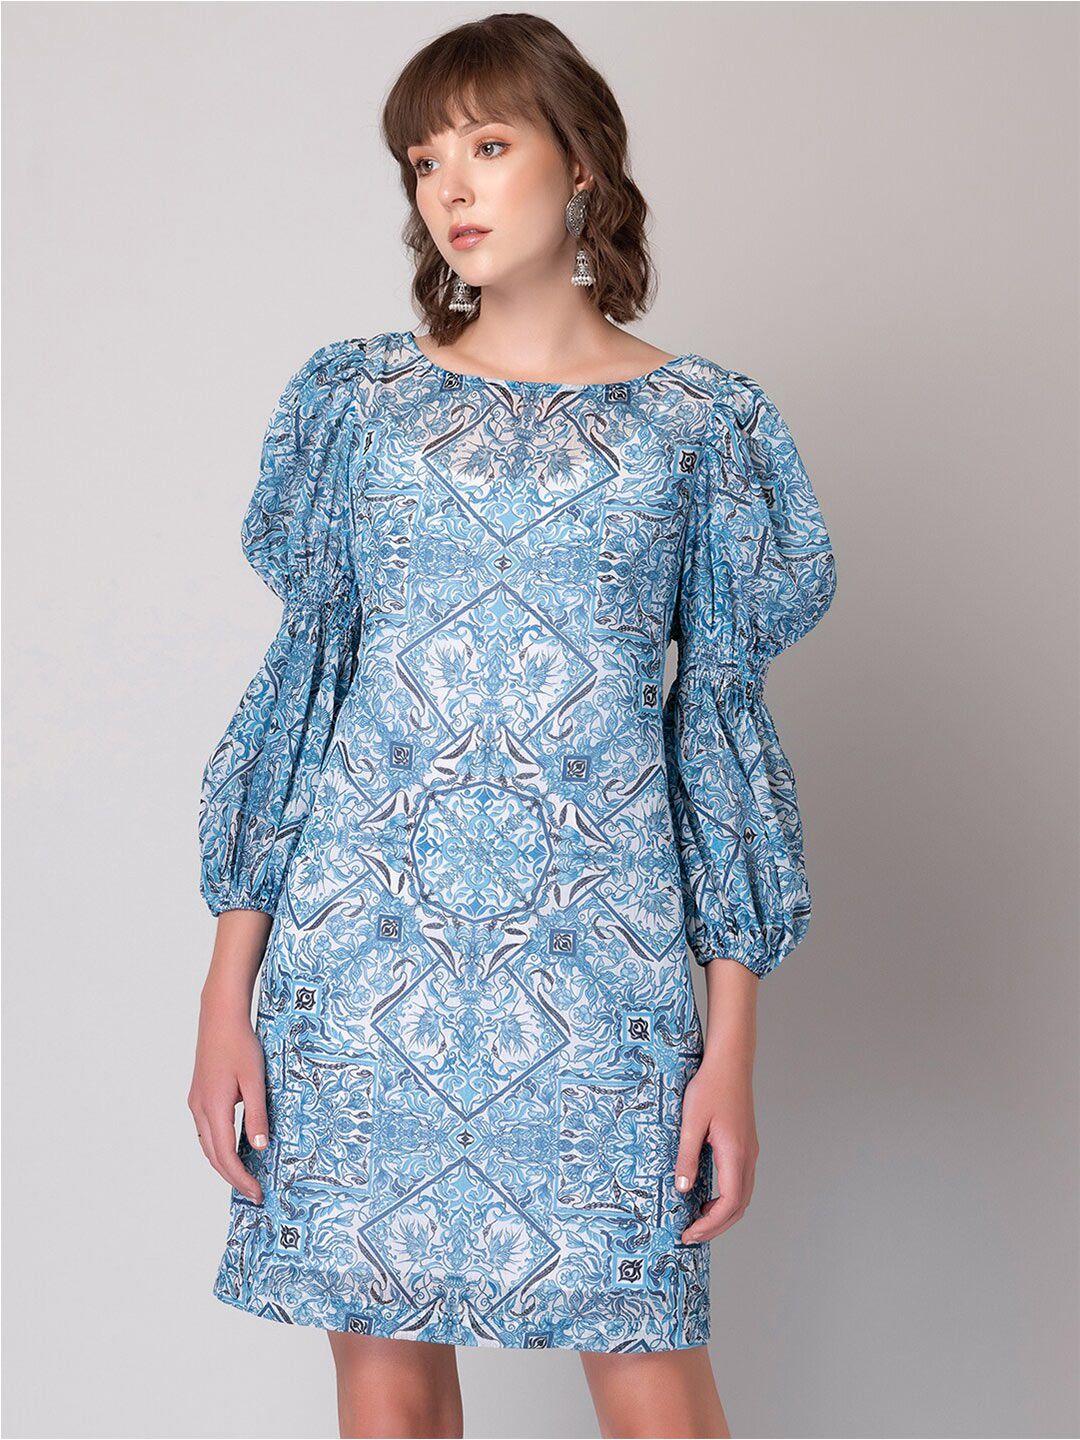 faballey blue floral print bell sleeve chiffon a-line dress